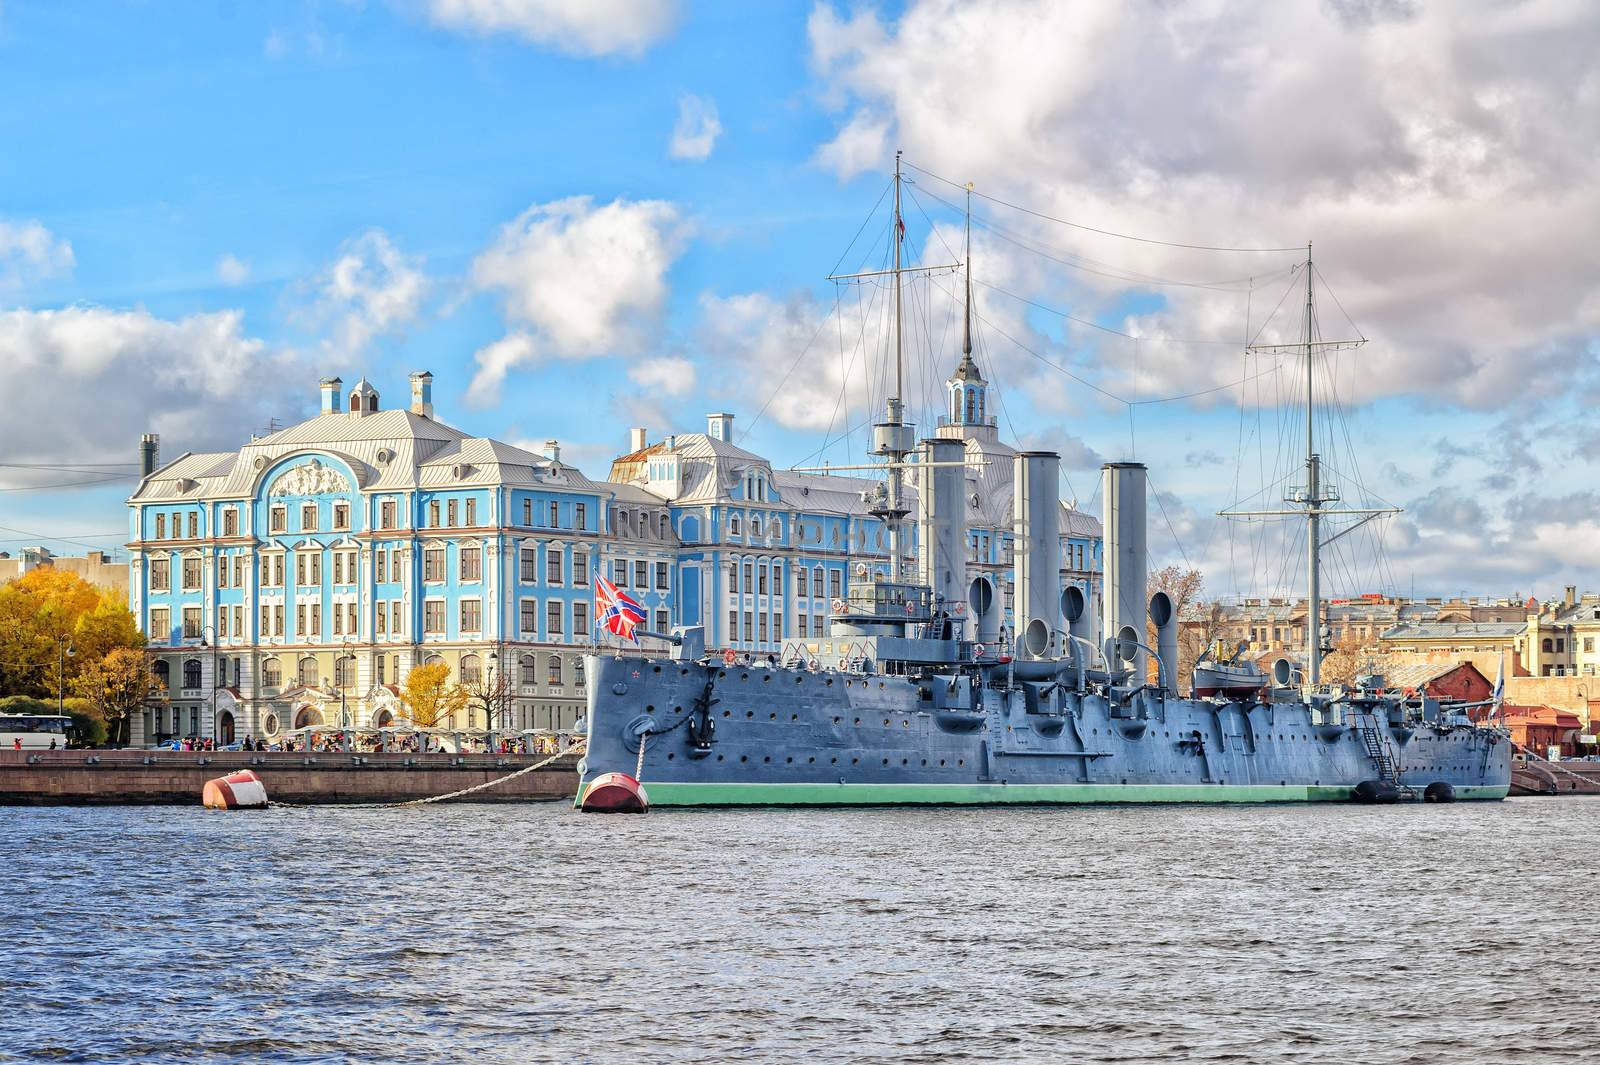 Aurora Cruiser, St Petersburg, Russia by GlobePhotos